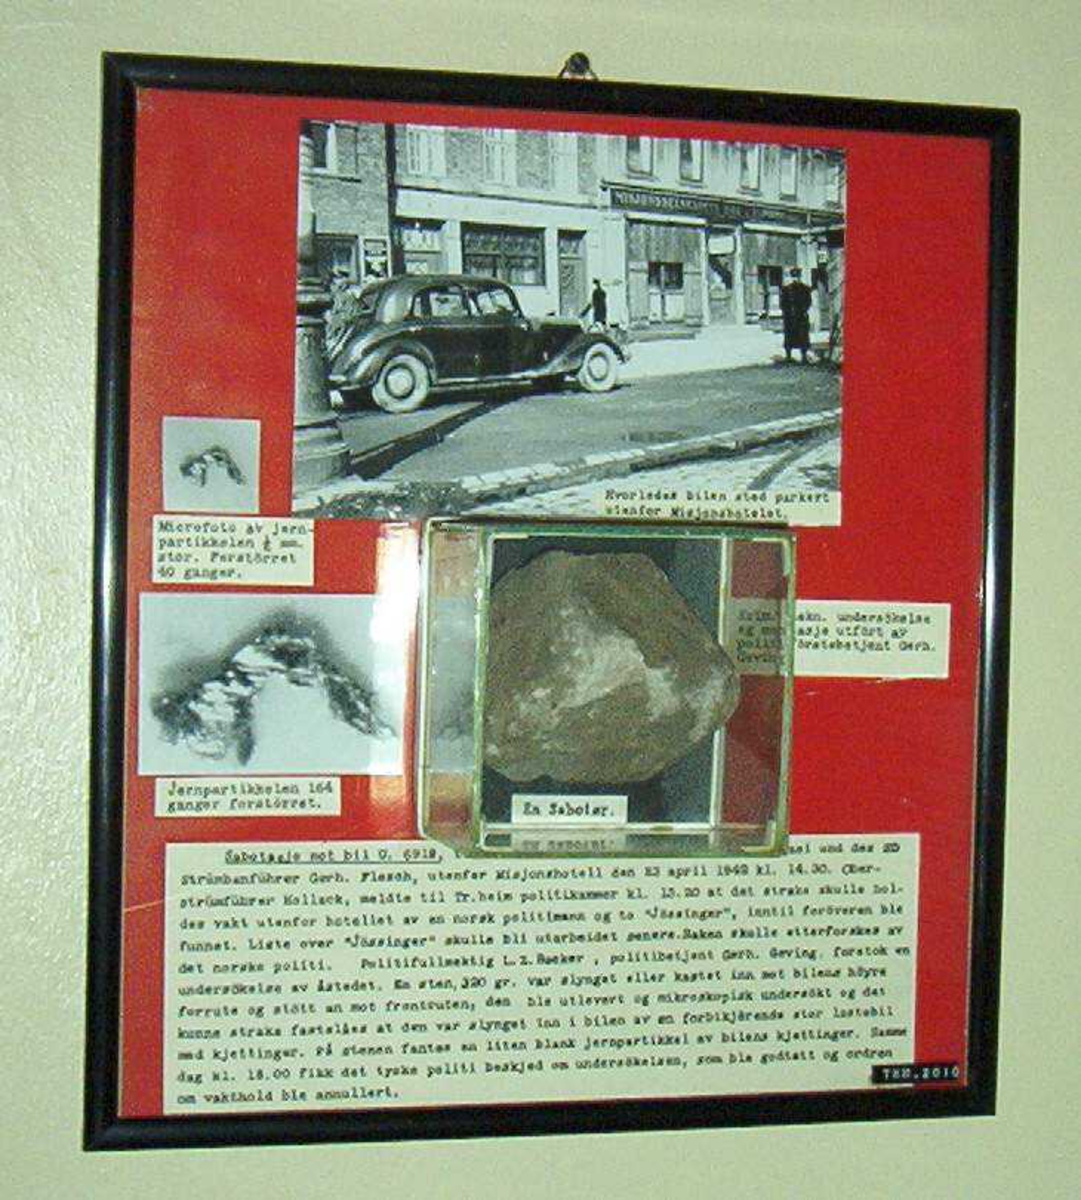 Stein montert i på rød brakgrunn, med tekst og bilder fra åstedet.